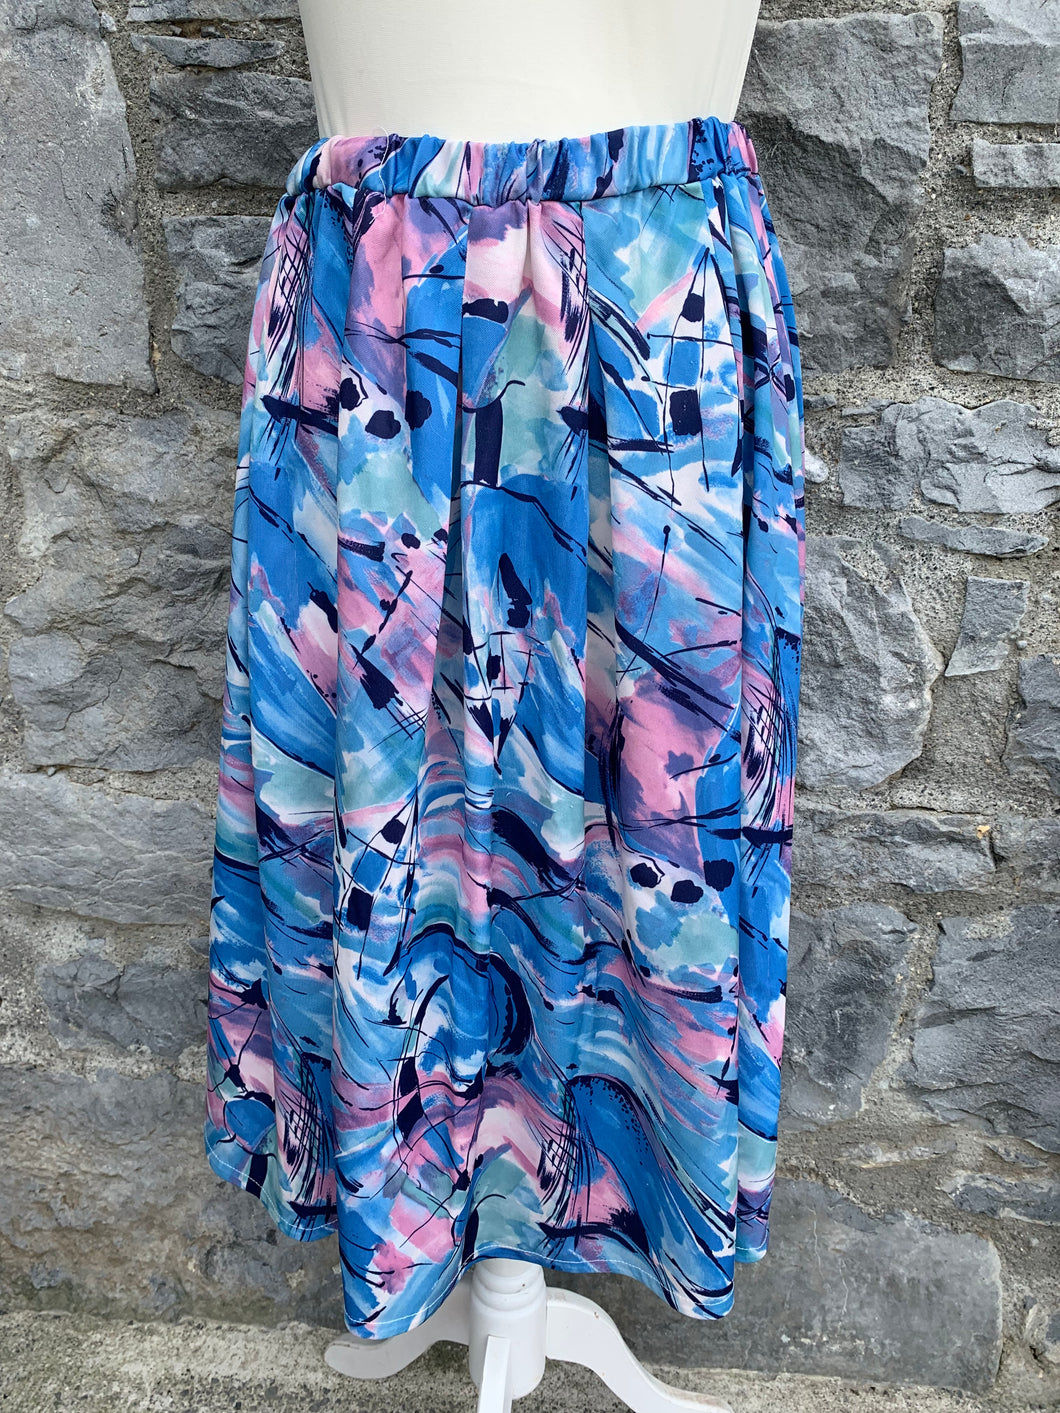 Butteknit 80s pink&blue skirt  uk 6-10